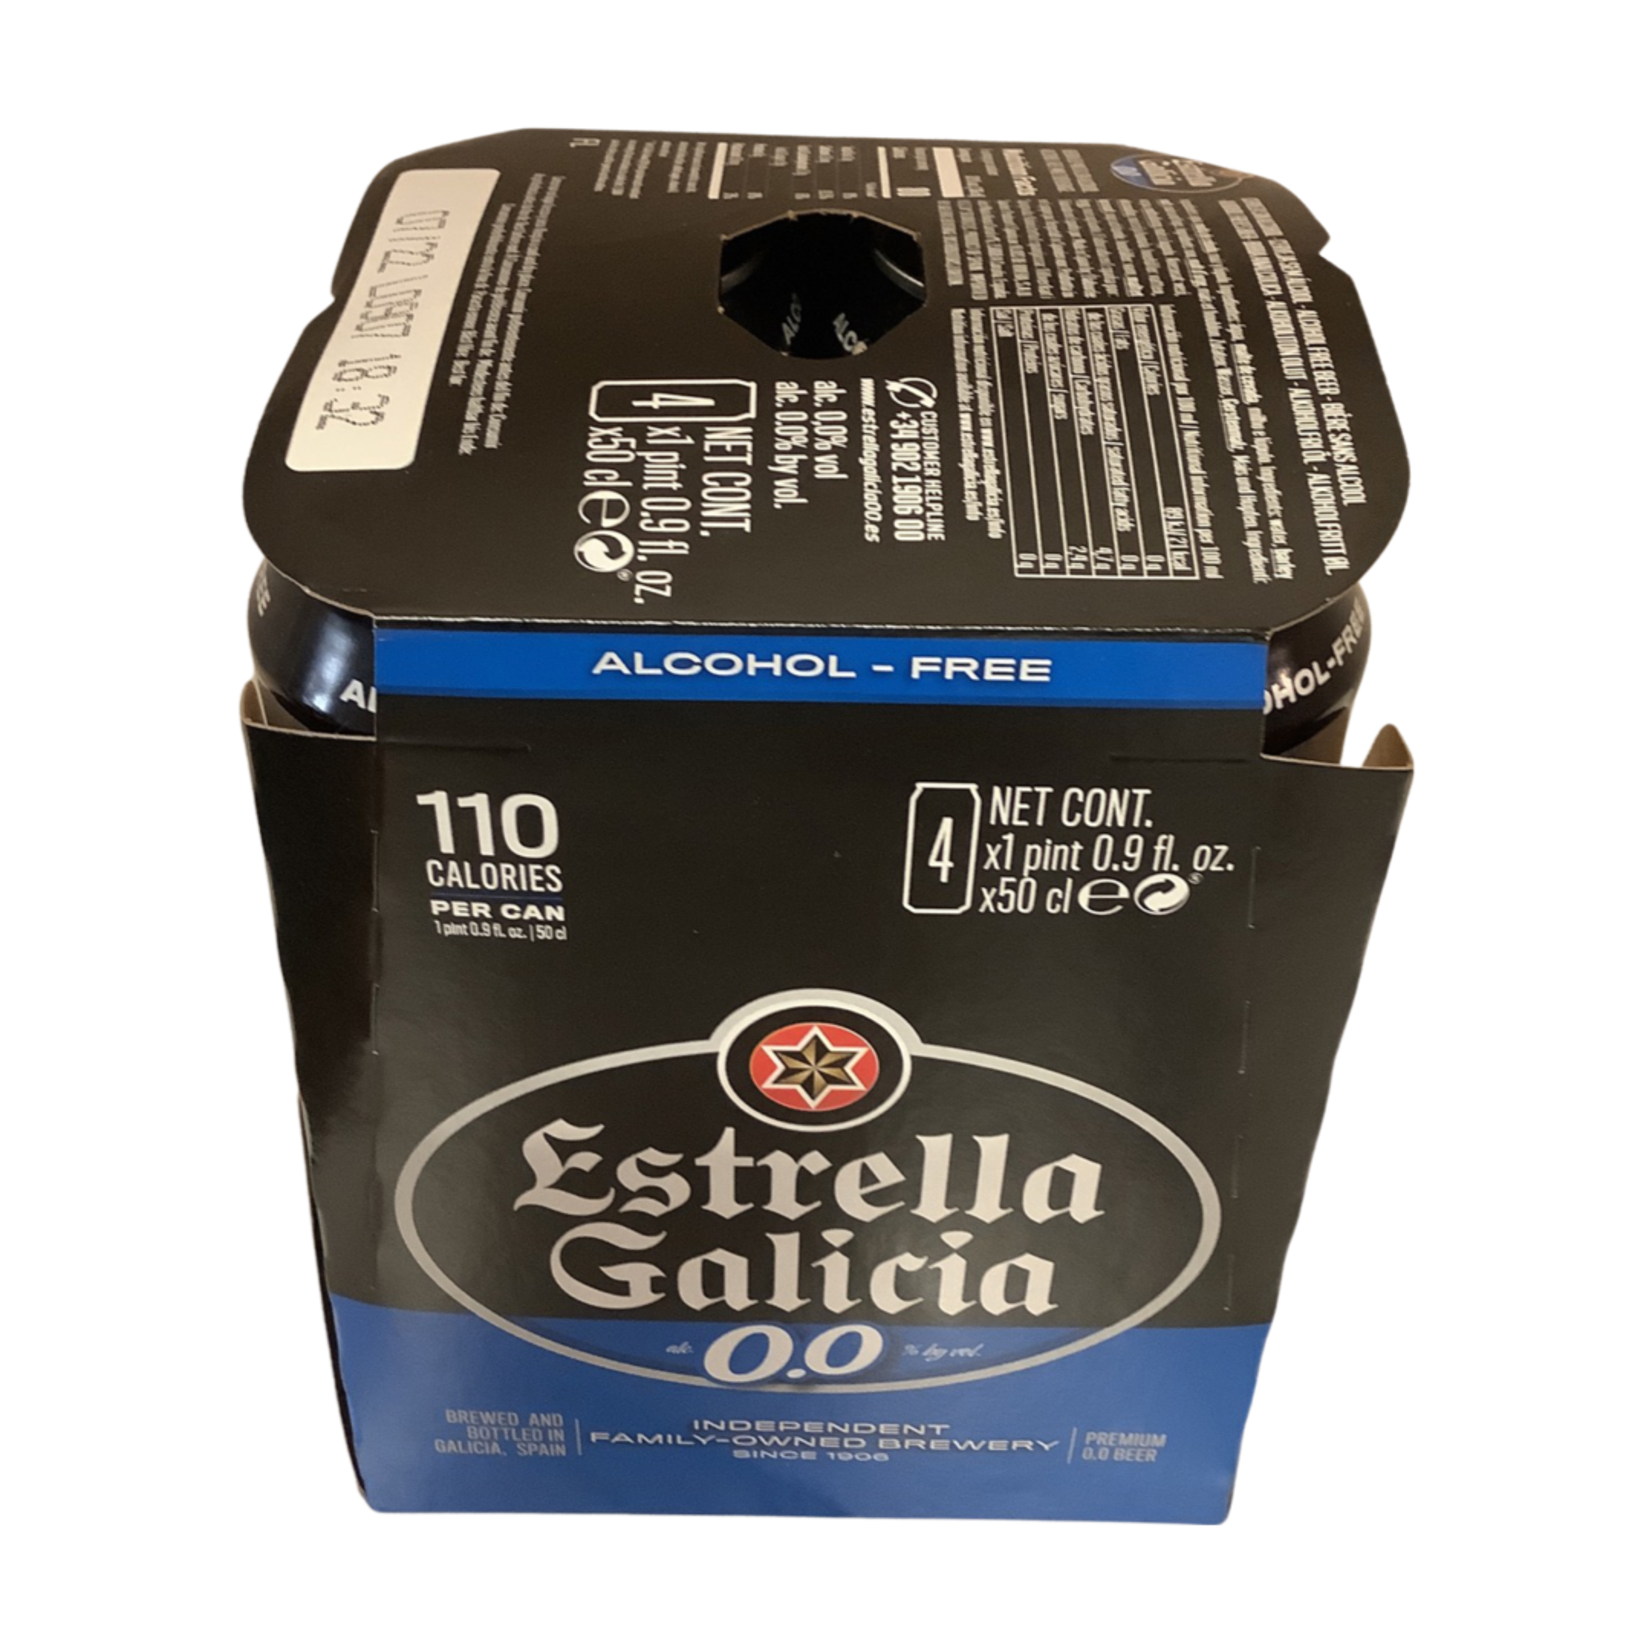 Estrella Galicia 0.0 Alcohol-Free Beer (16 OZ), Spain